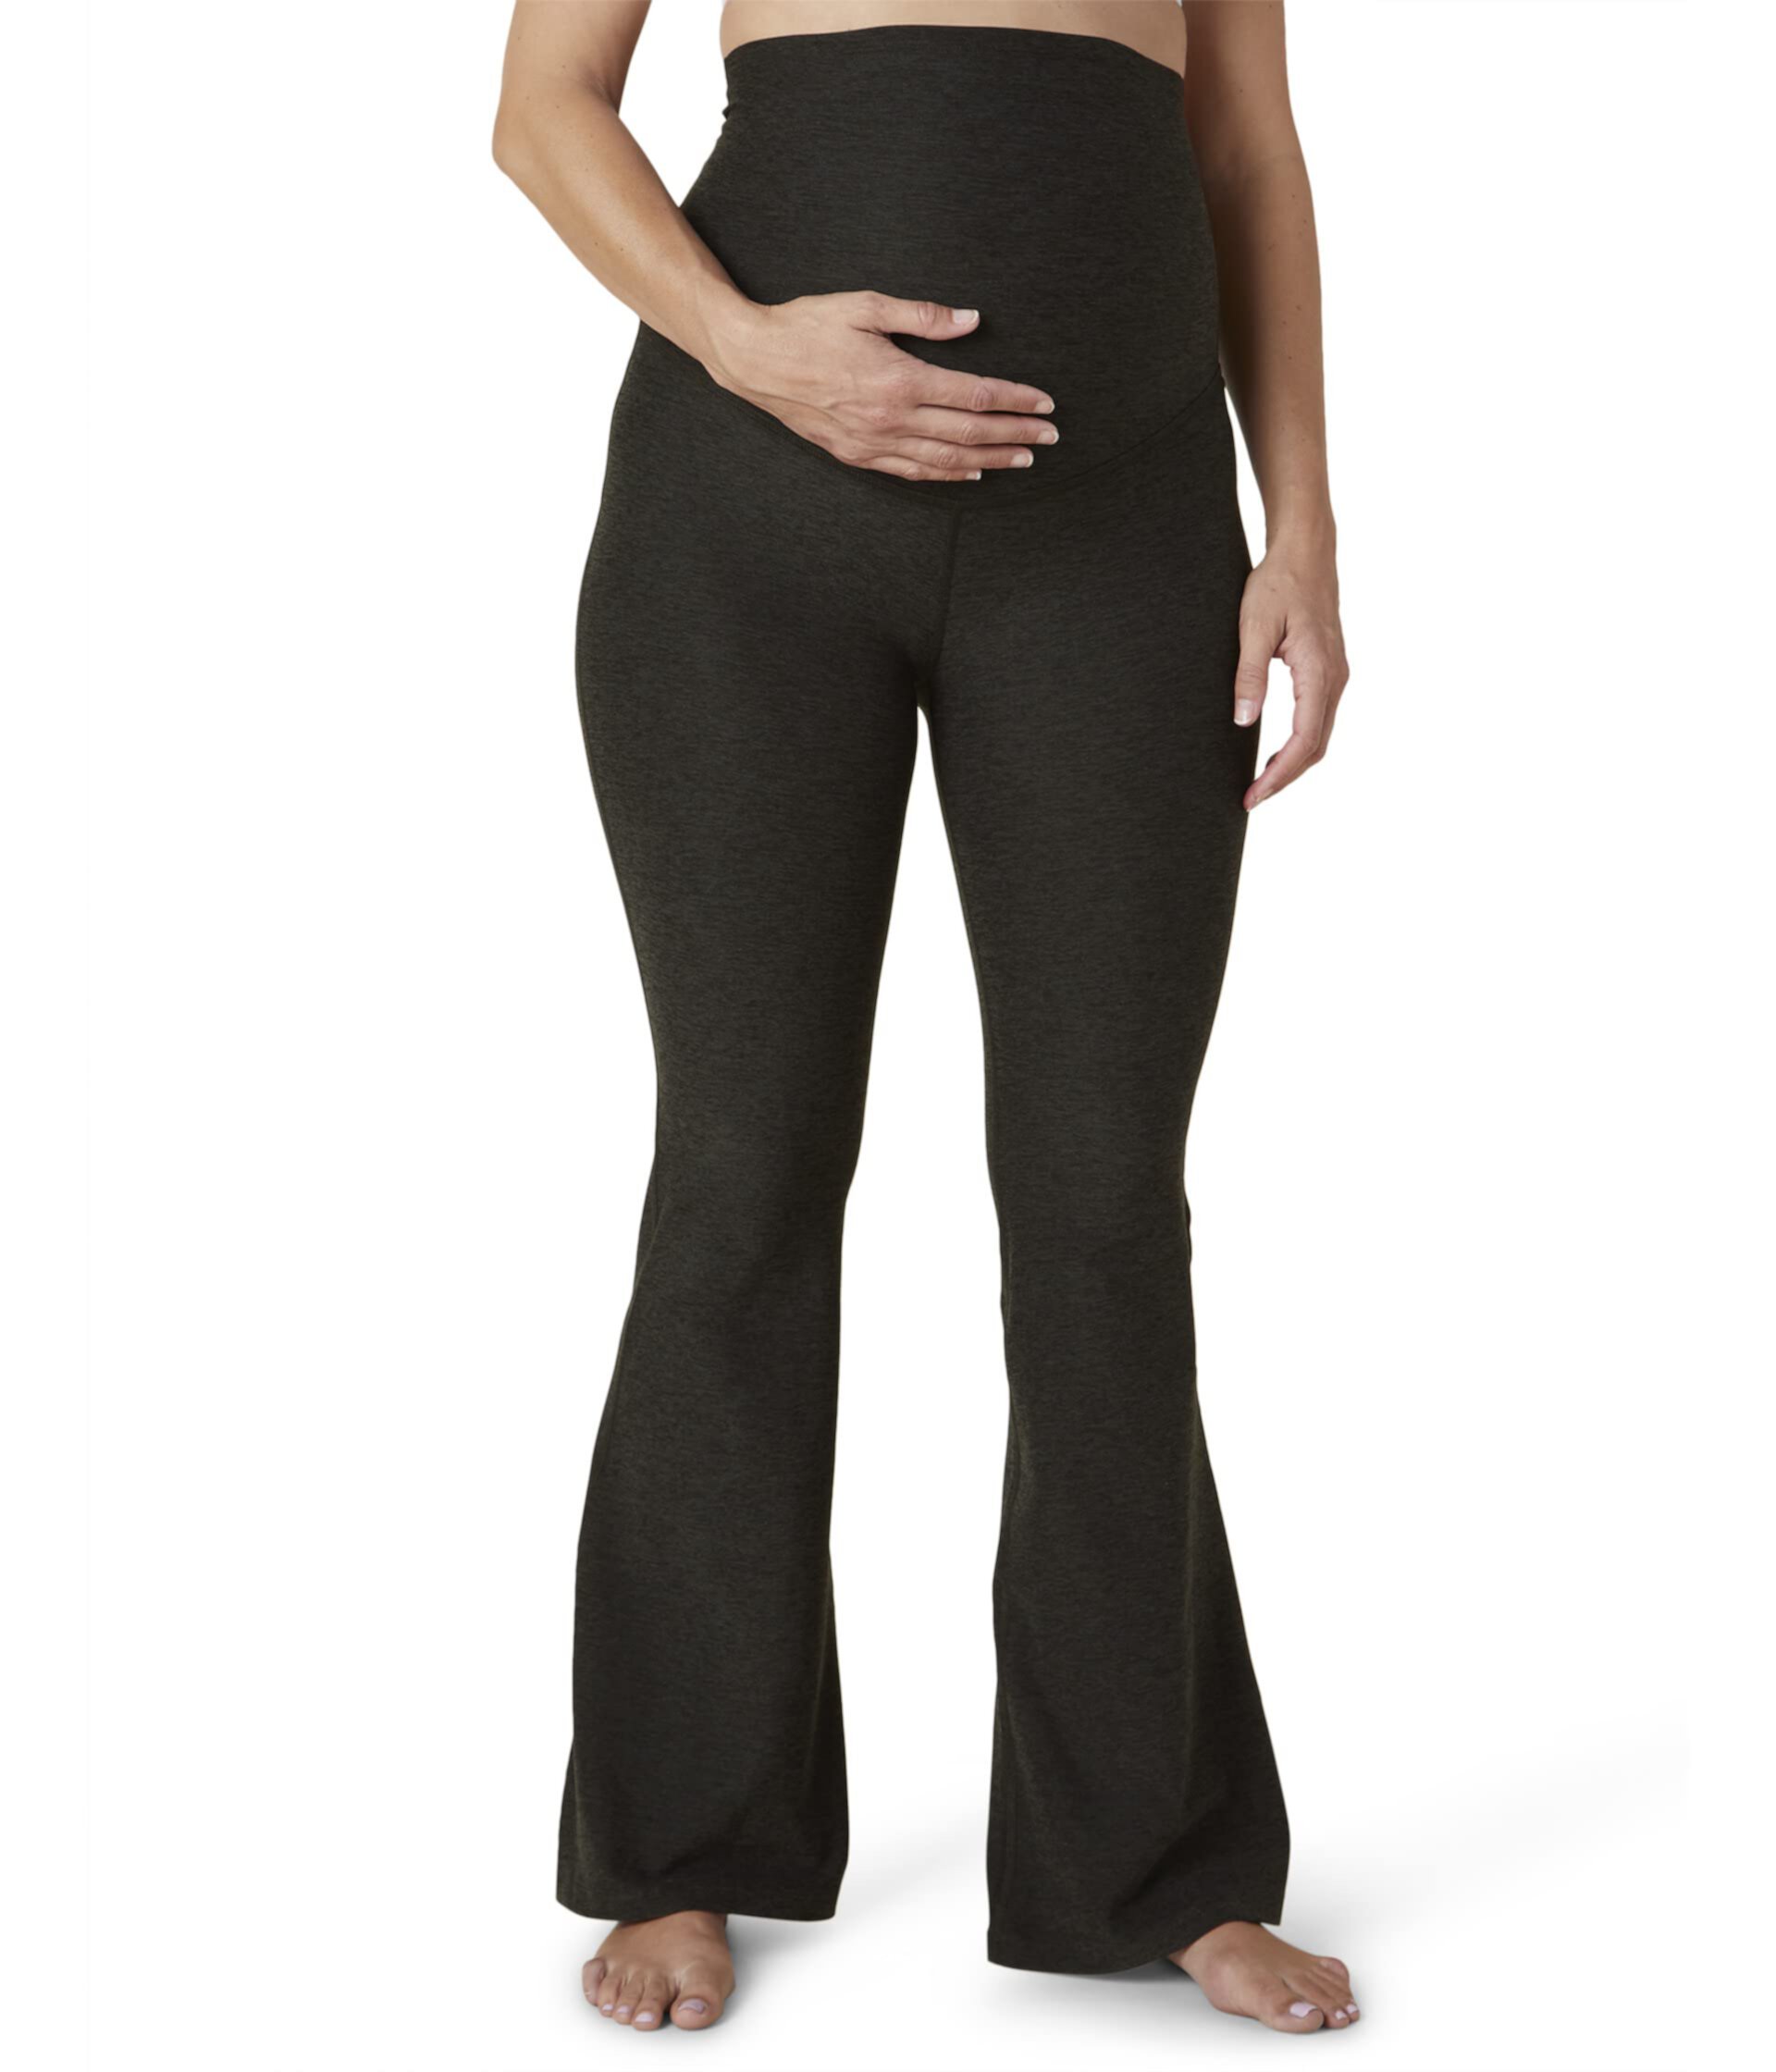 Расклешенные брюки для беременных с высокой талией Spacedye Beyond Yoga